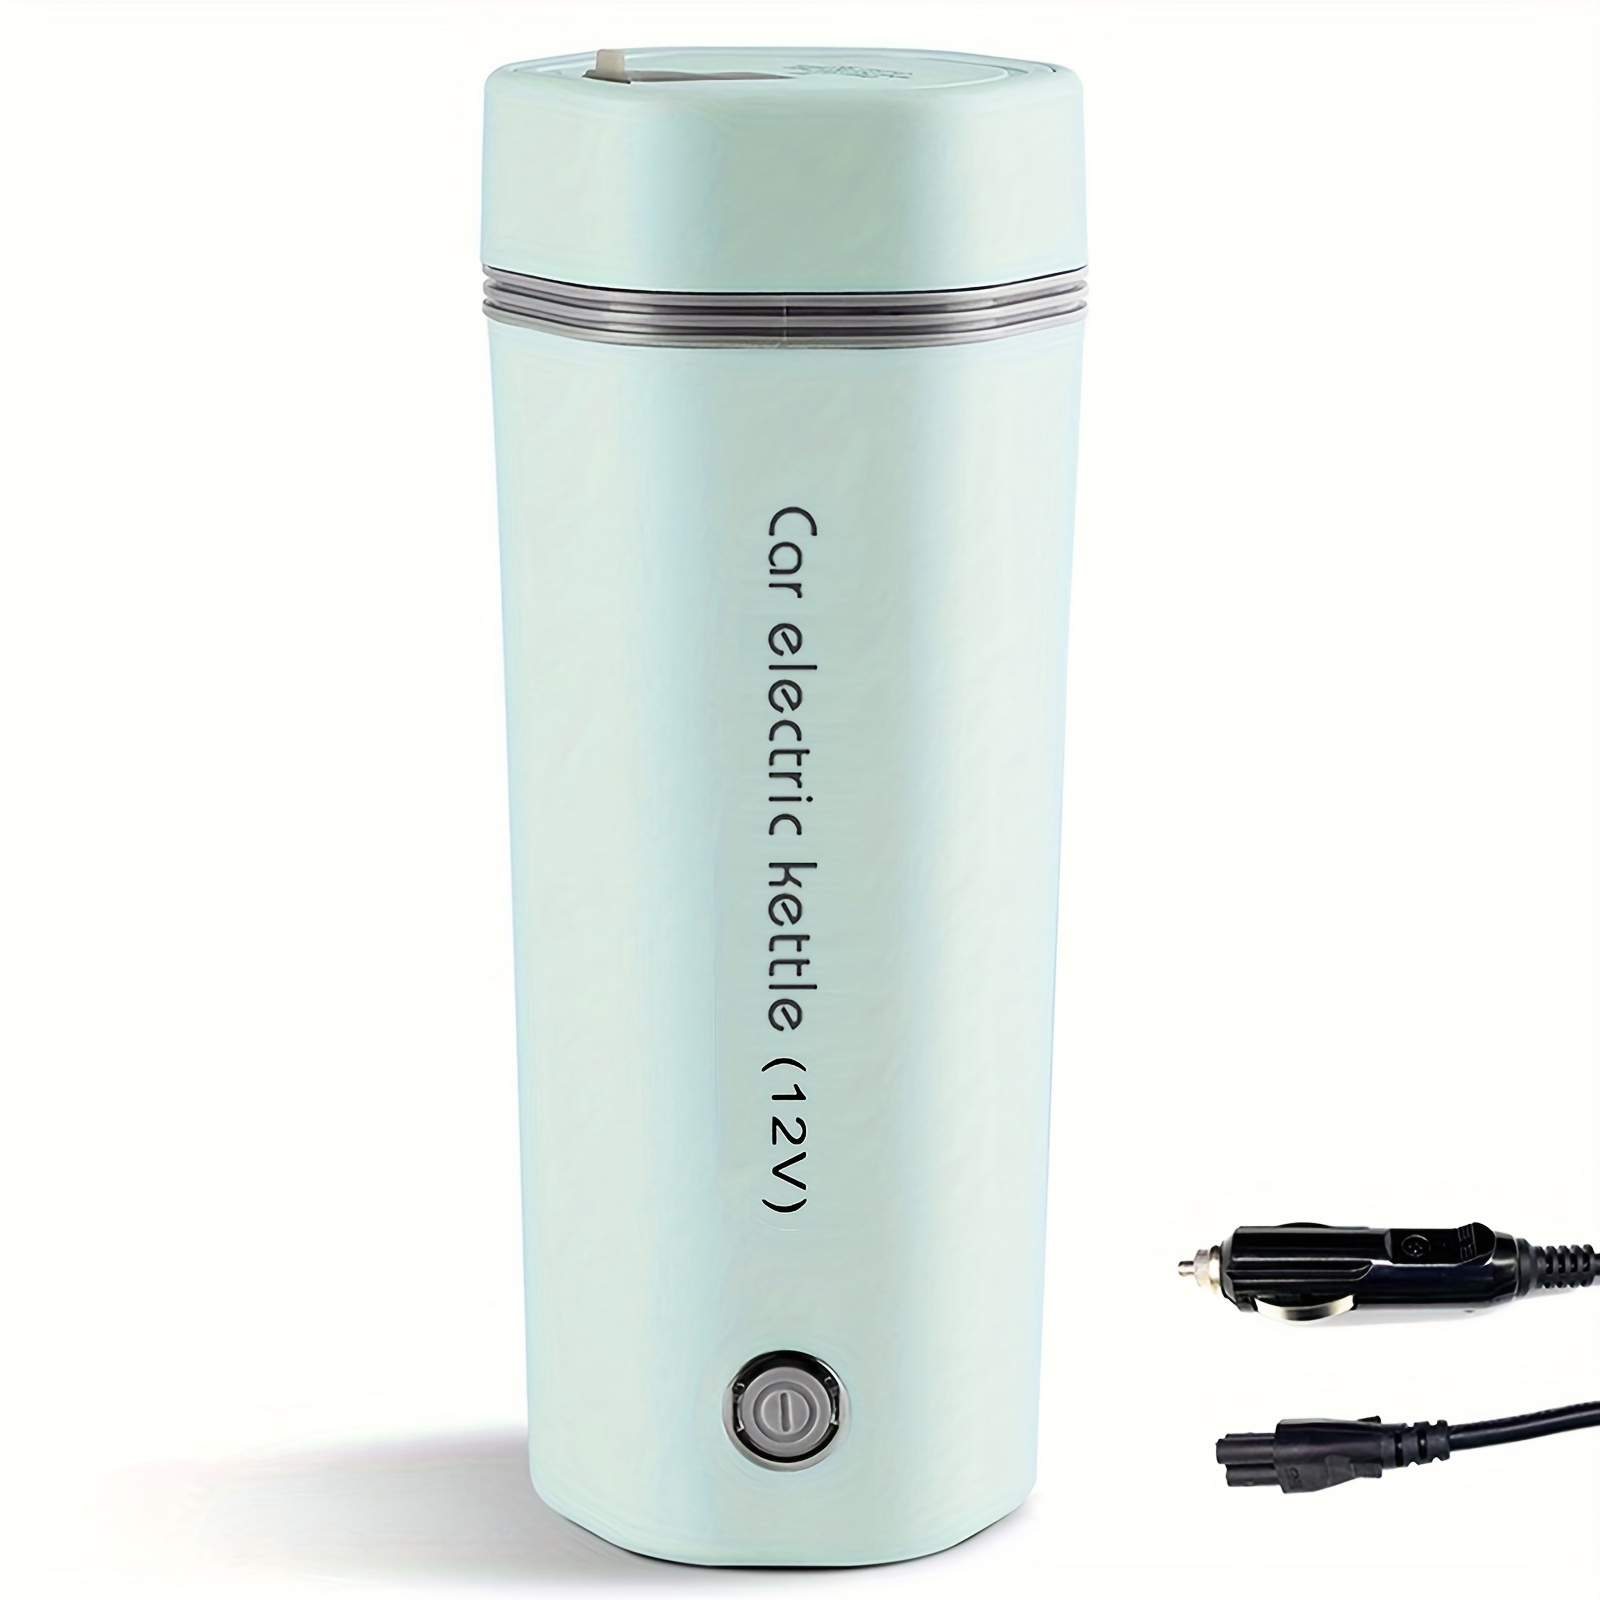 12v Chauffe-eau électrique Mini Portable Électrique Voiture